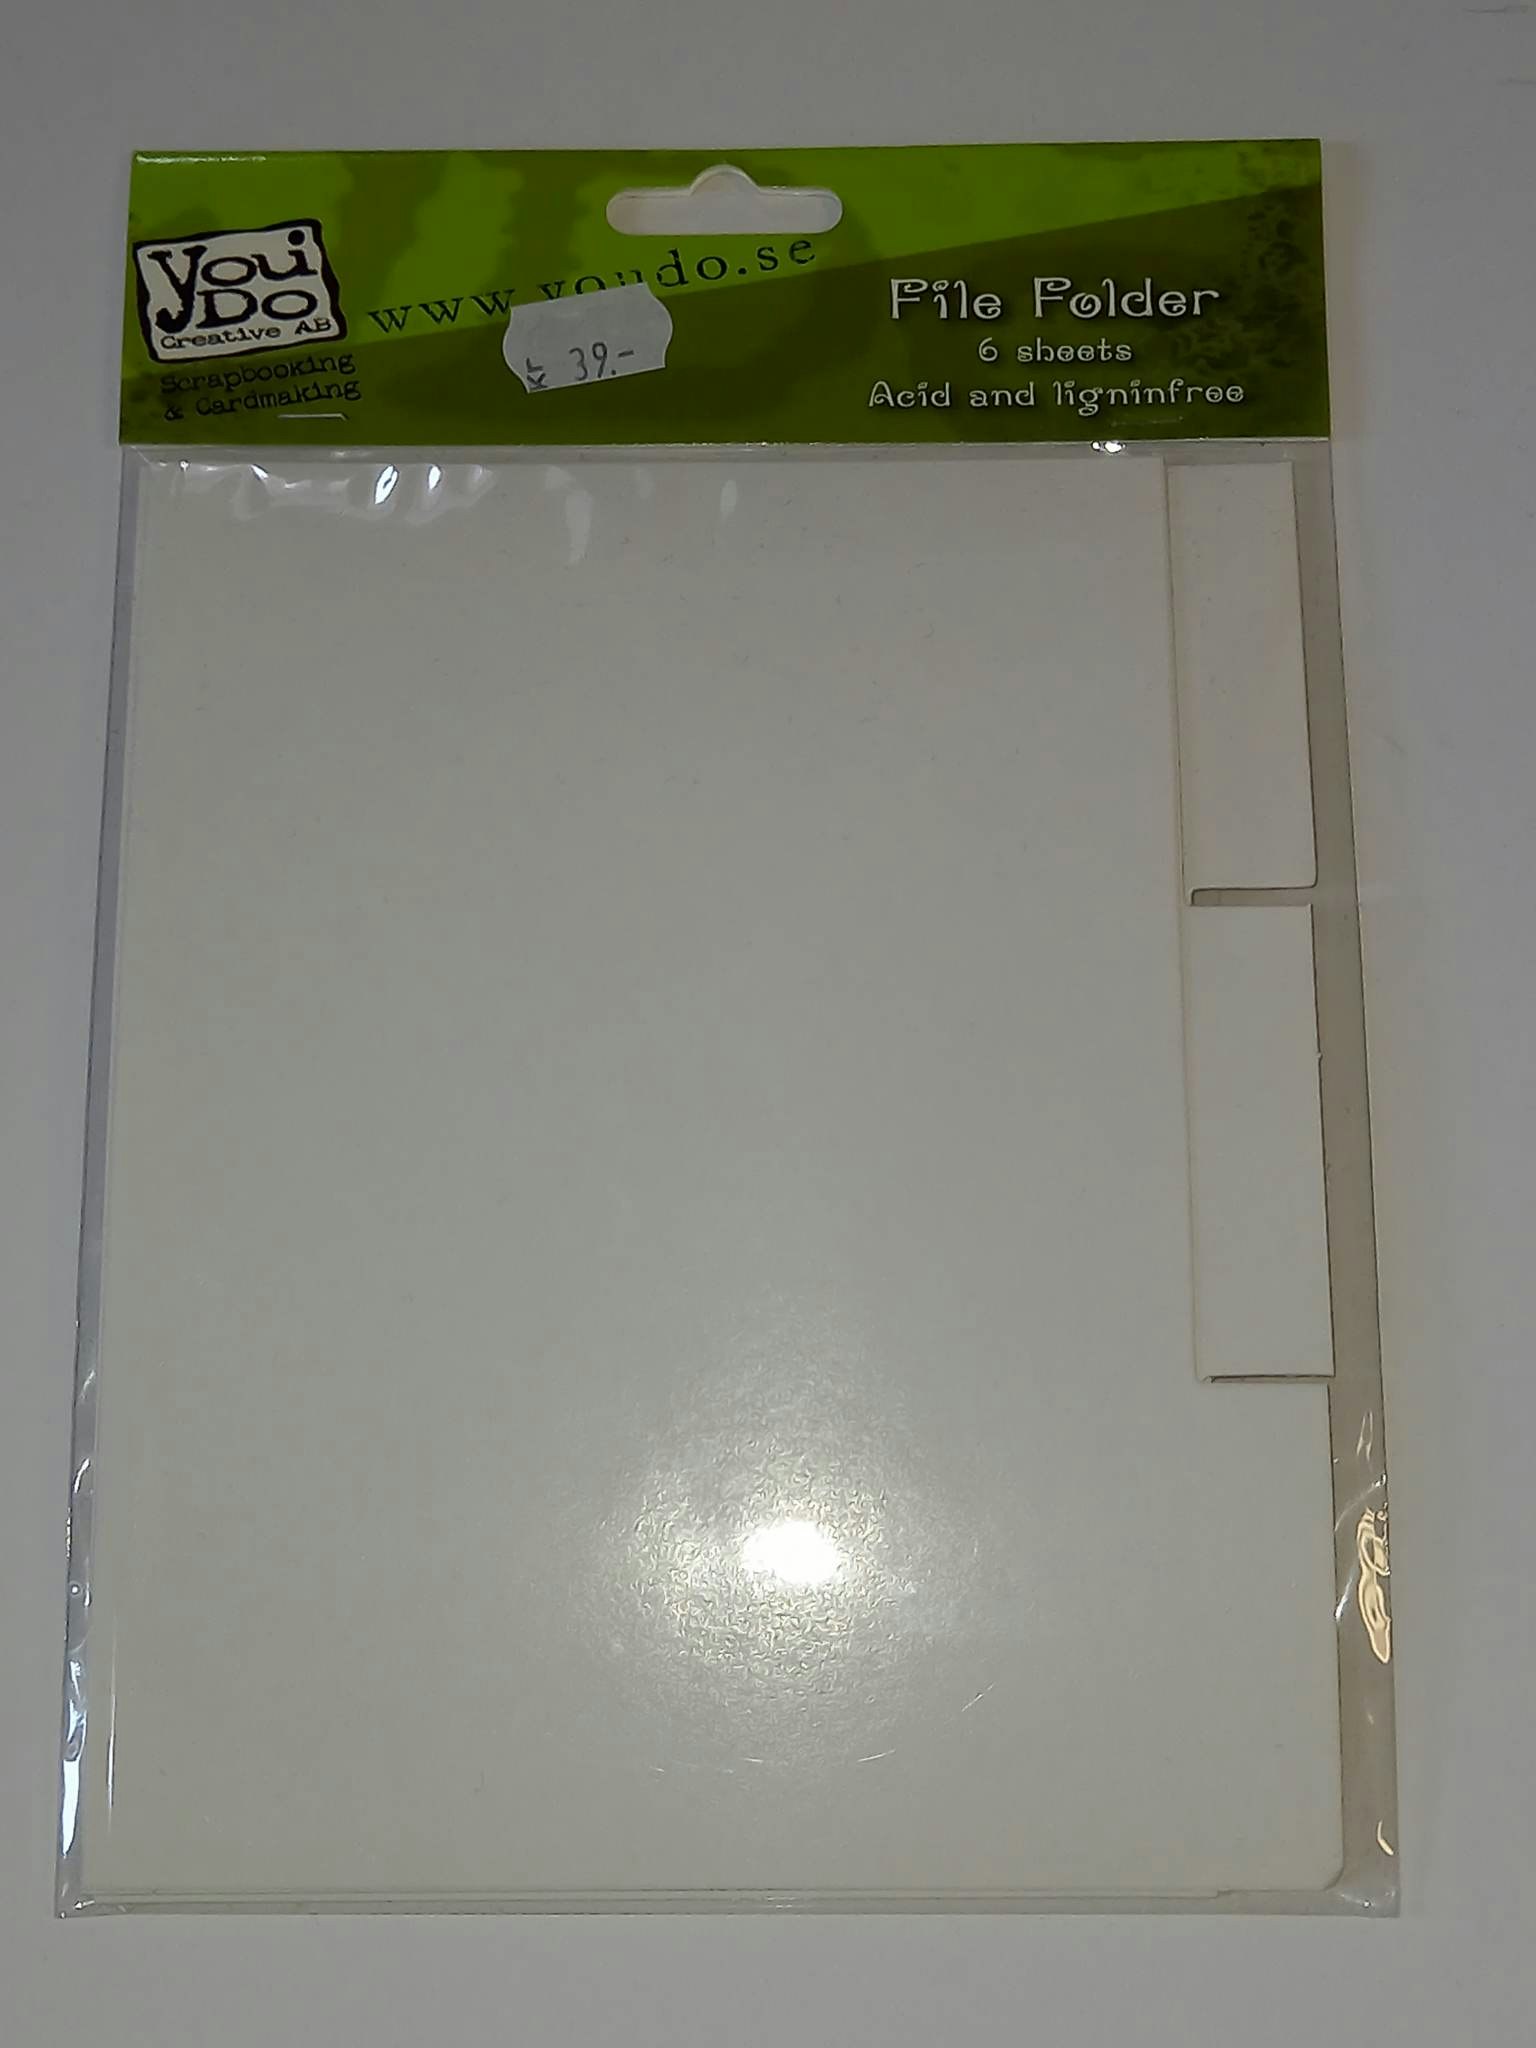 File Folder - grund till flikalbum i kraftig kartong